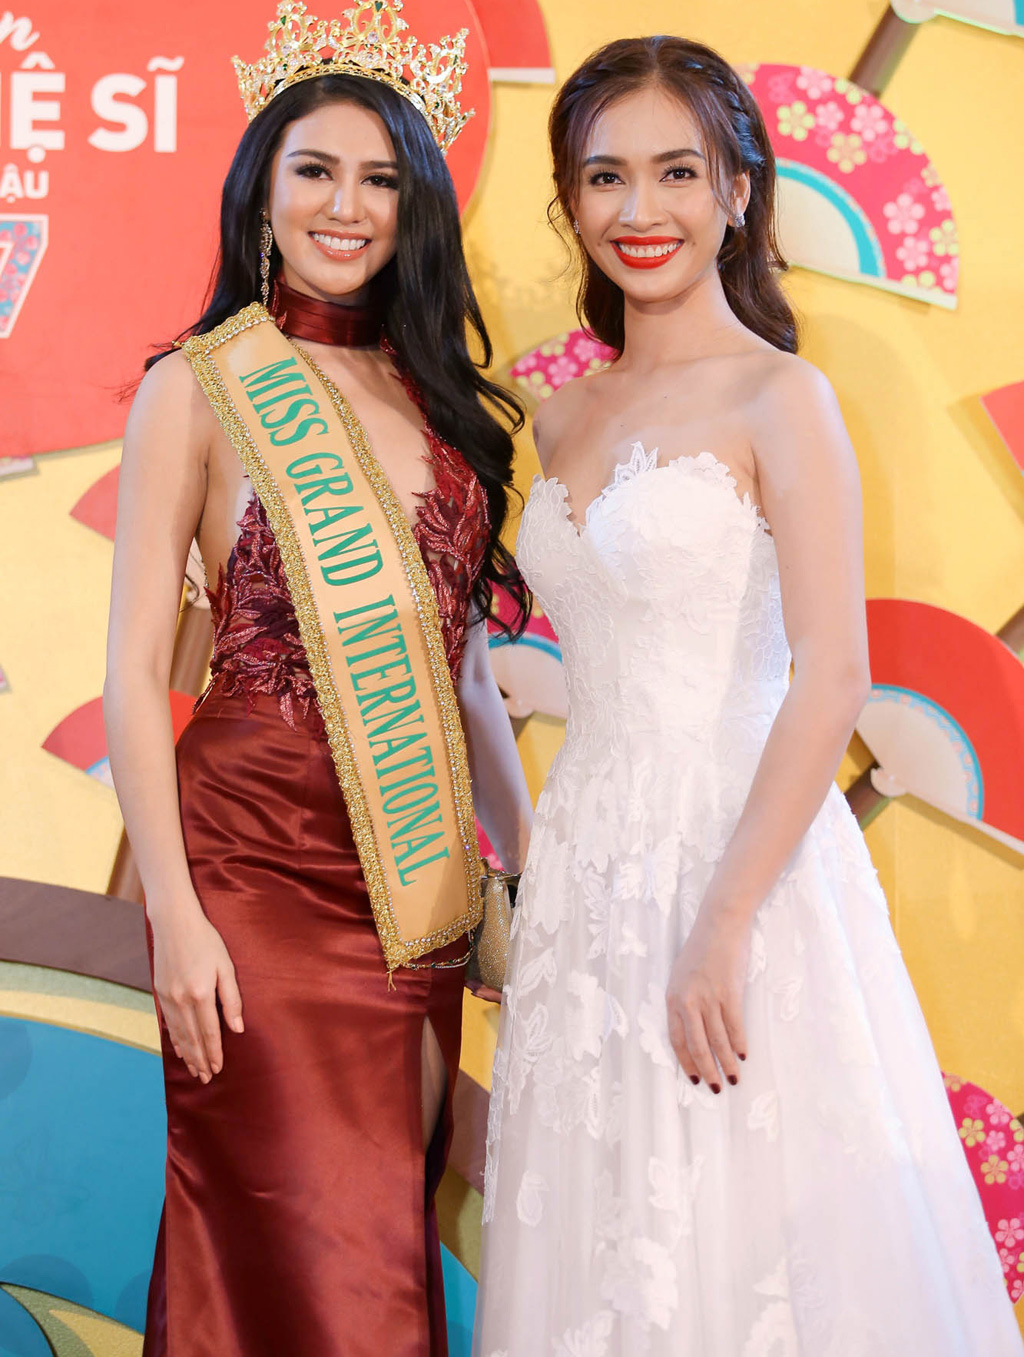 Ái Phương, Phan Thị Mơ đọ dáng cùng Miss Grand International 2016 1